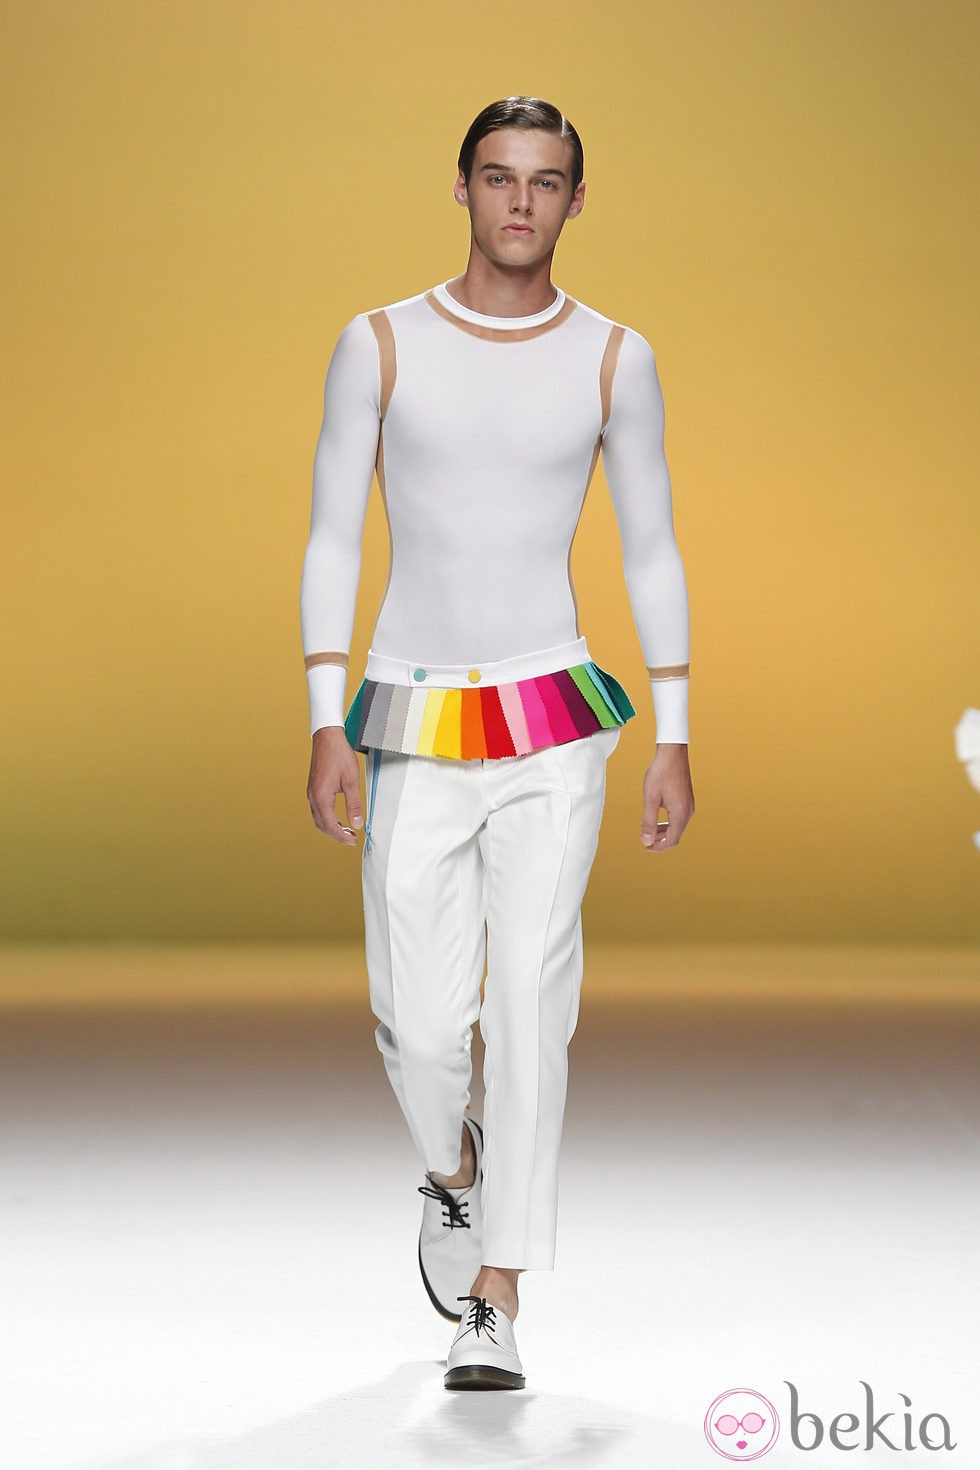 Pantalón para hombre con retales multicolor en la cintura de Davidelfín, colección primavera 2012